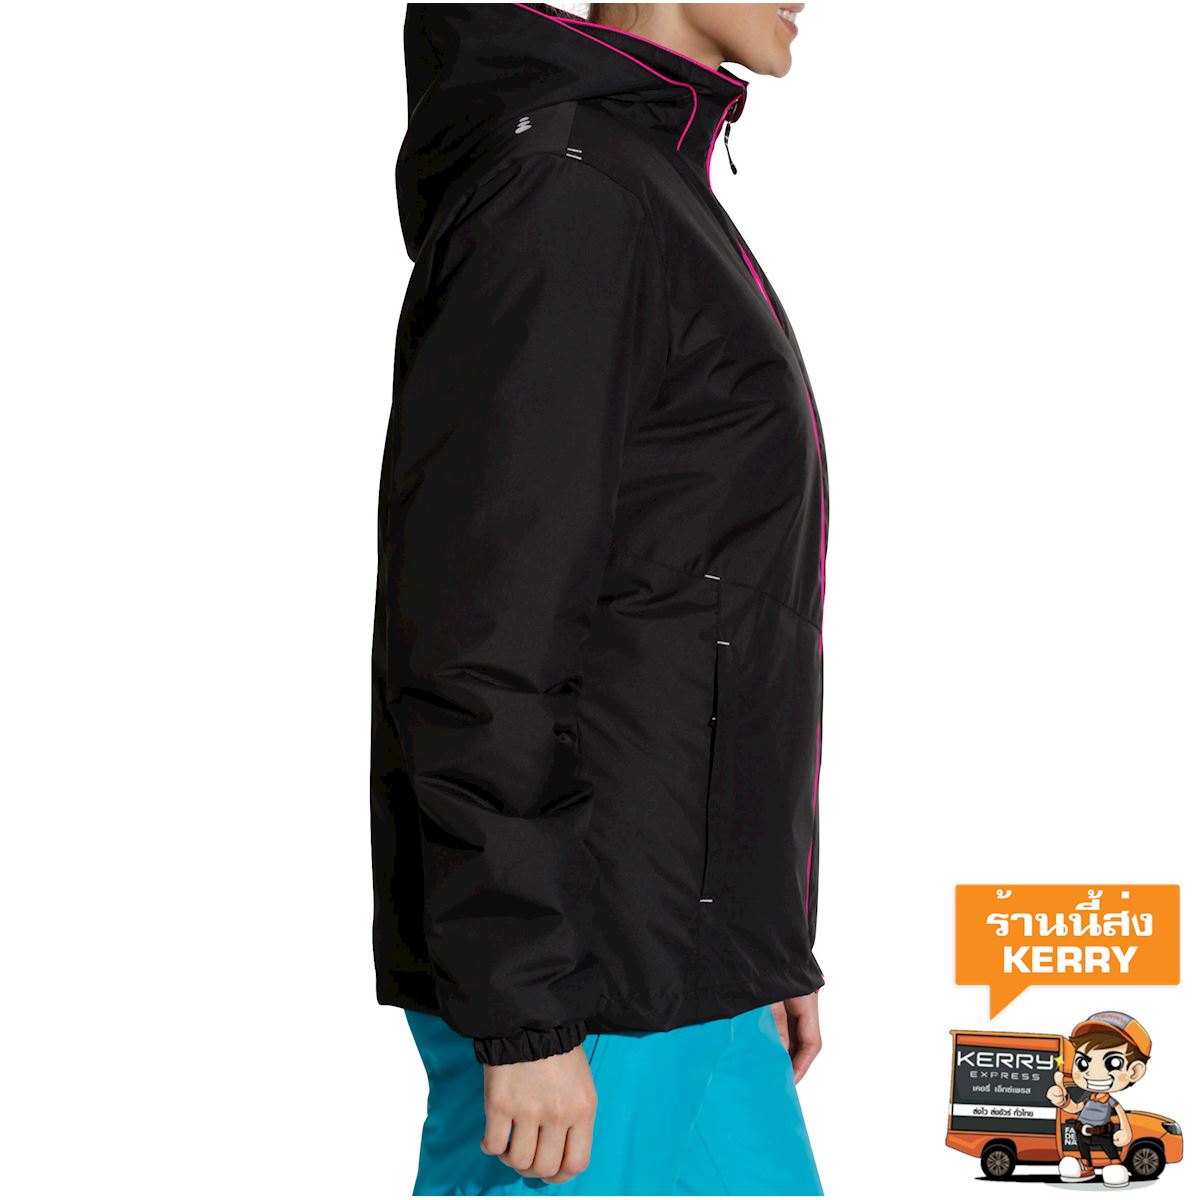 เสื้อแจ็คเก็ตเล่นสกีในลานสกีสำหรับผู้หญิงรุ่น SKI-P 100 (สีดำ) เสื้อผ้า สกี เลื่อน เสื้อแจ็คเก็ต เสื้อ